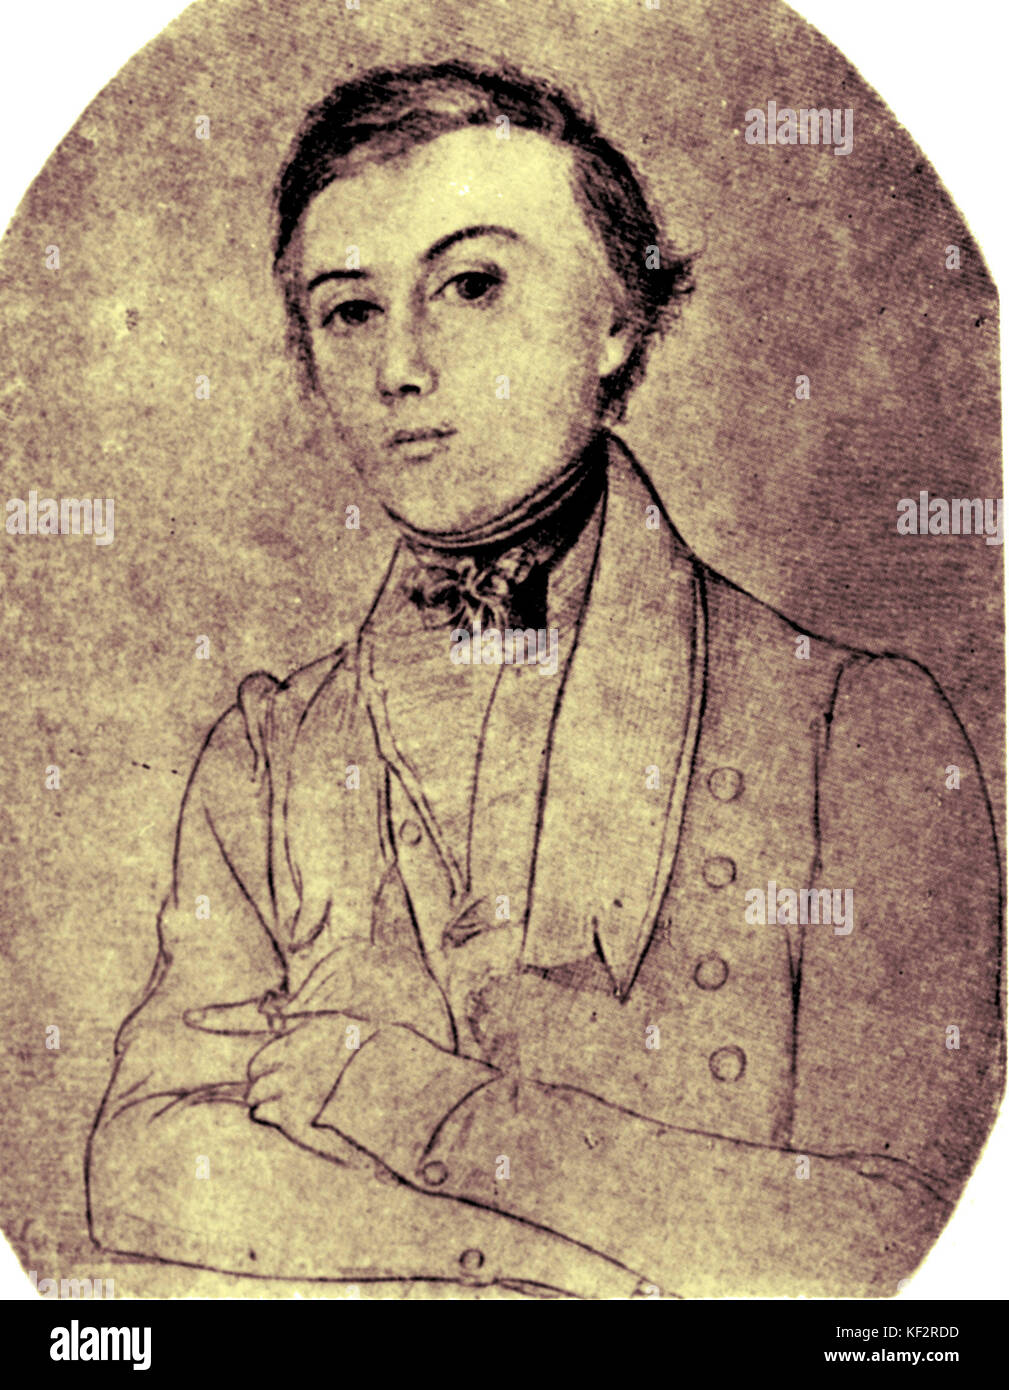 Wilhelm Müller. Friend of Schubert, wrote the lyrics for Schubert's 'Die Schöne Müllerin'.  German author,1794-1857. Stock Photo